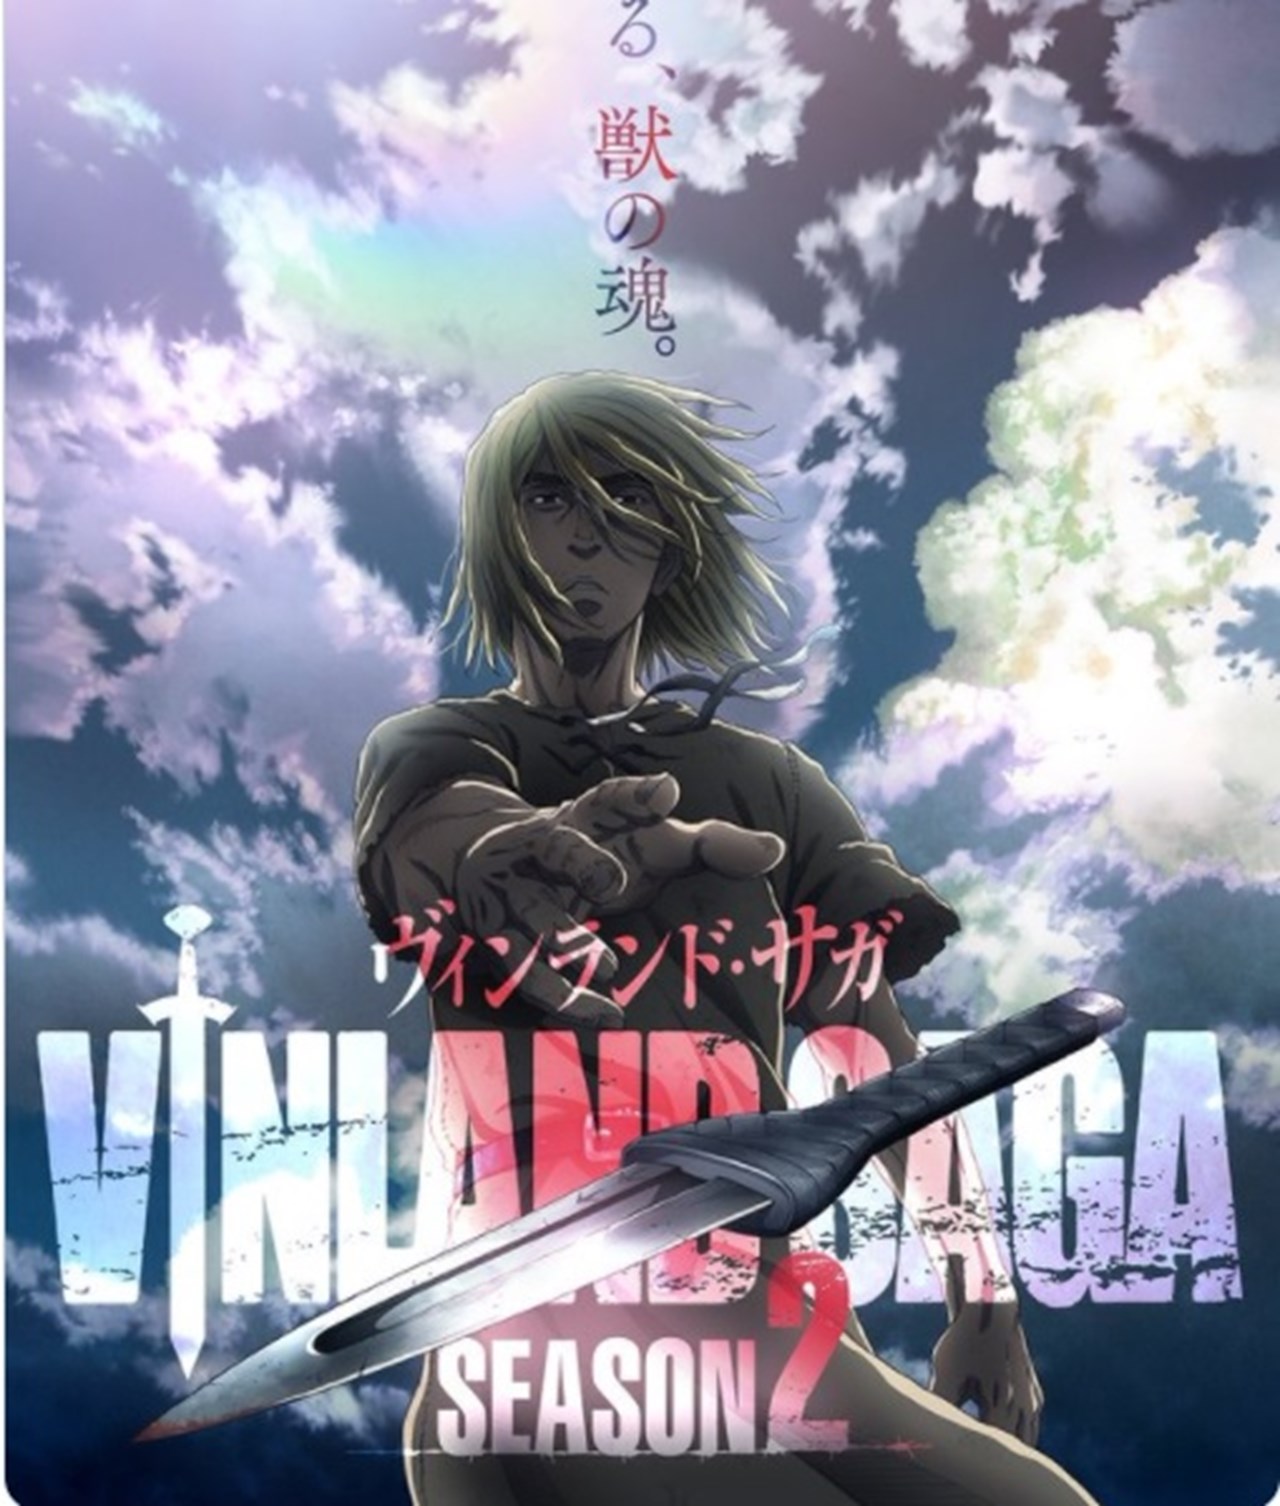 Vinland Saga Season 2 is a Triumphant Condemnation of Violence